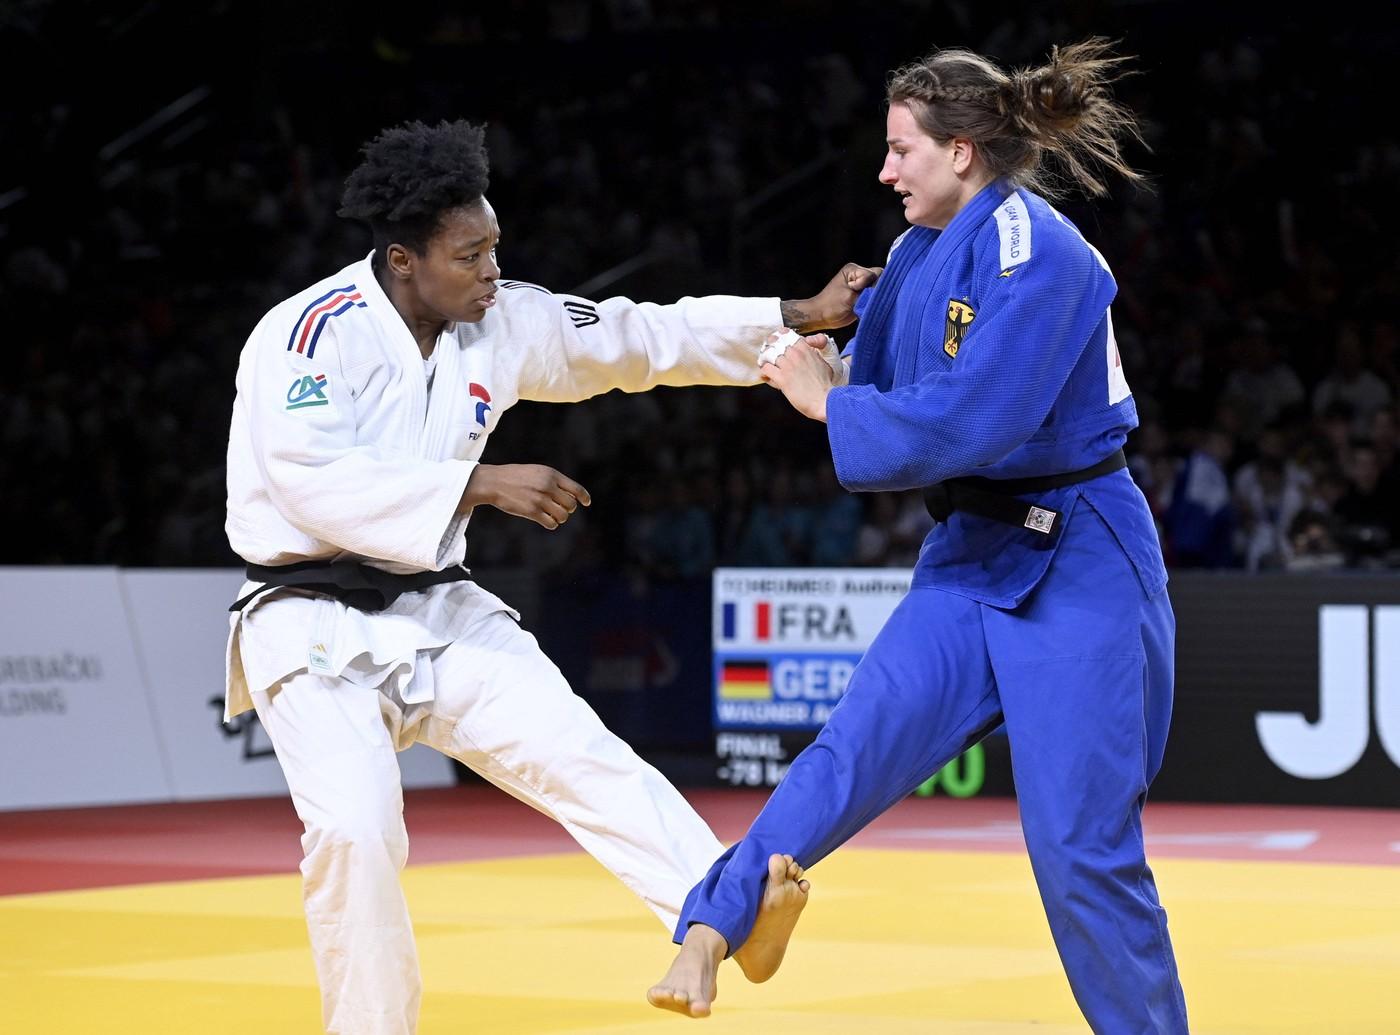 Ženski judo (slika je simbolična)